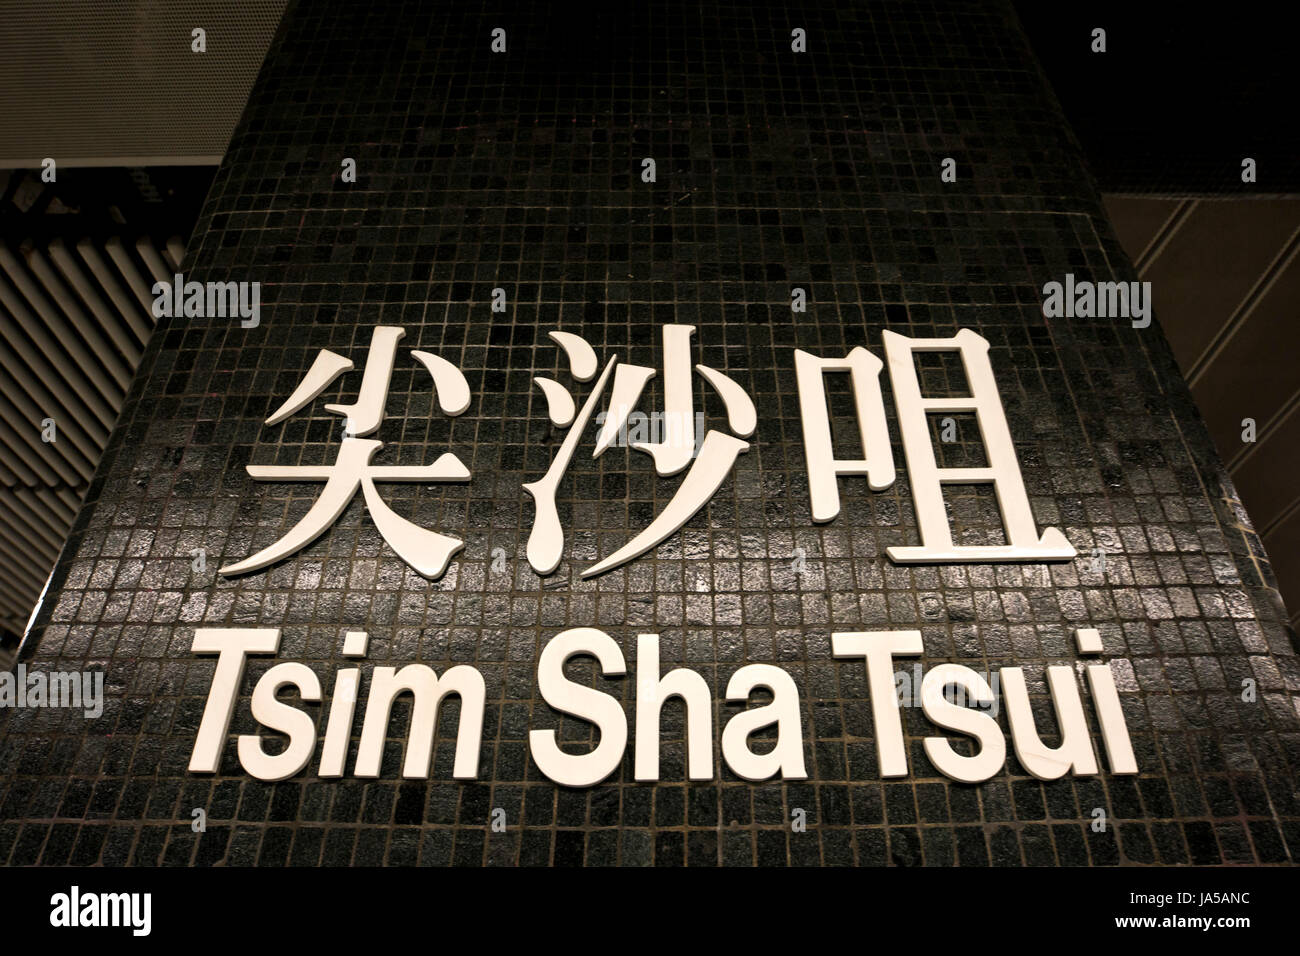 Horizontal view of the bilingual MTR (Mass Transit Railway) sign at Tsim Sha Tsui in Hong Kong, China. Stock Photo